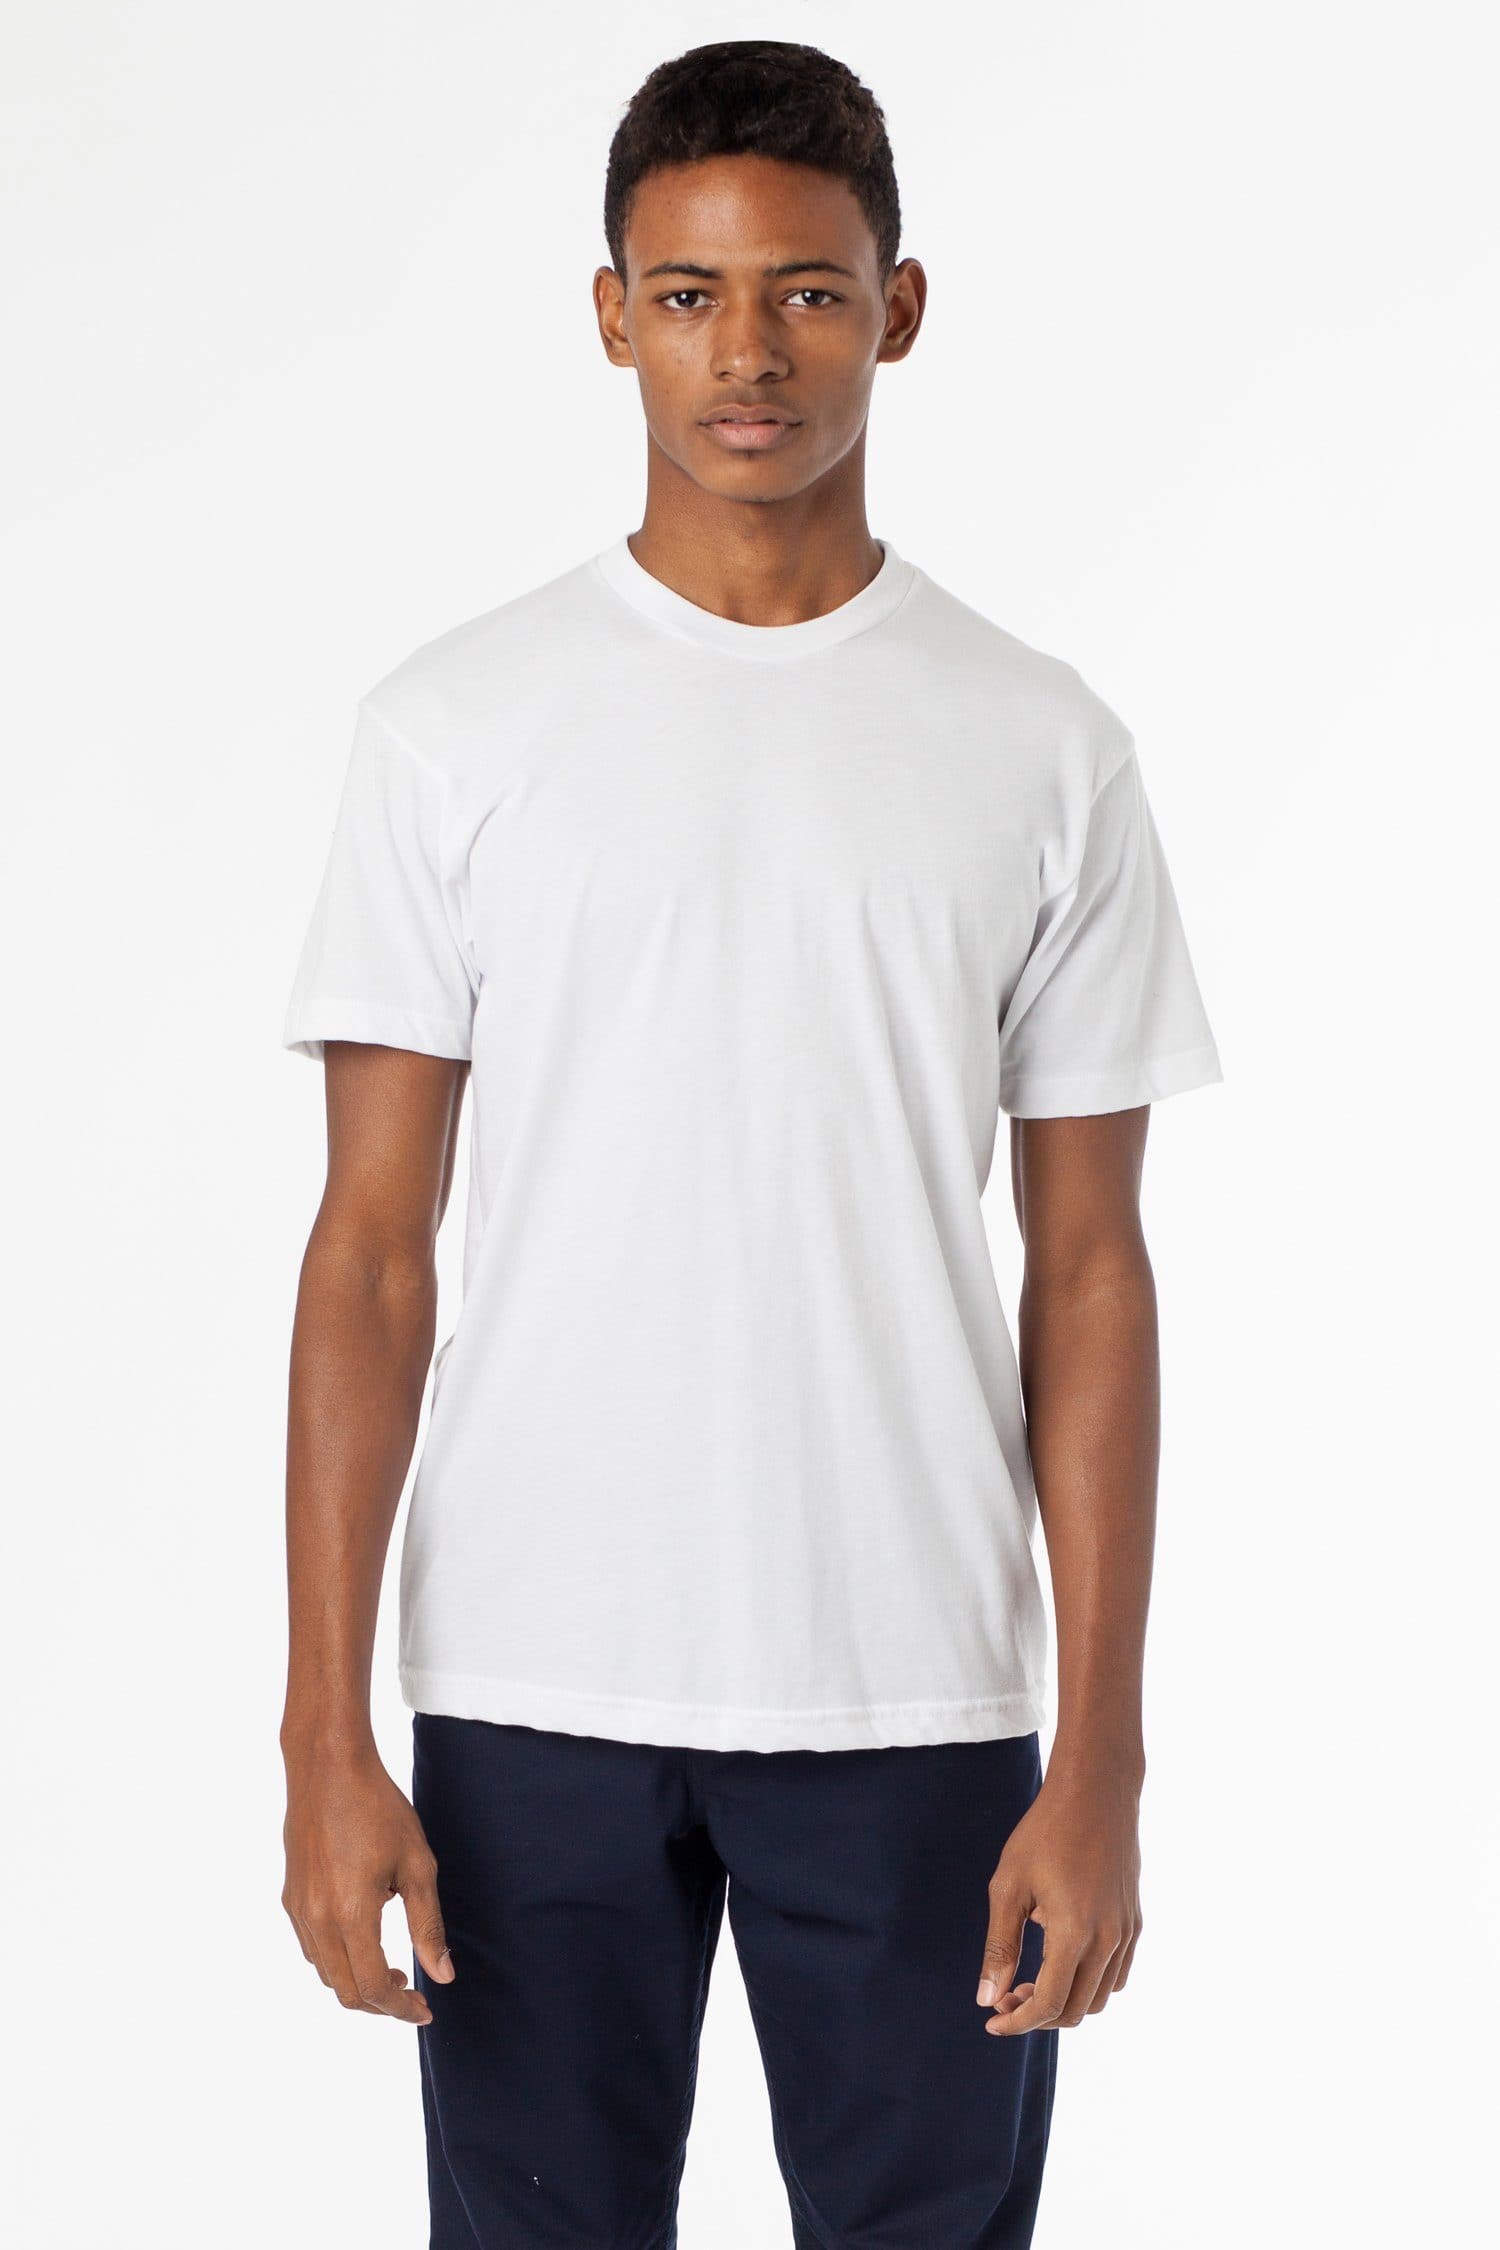 Jesse Brown Shapes - T-Shirt for Men